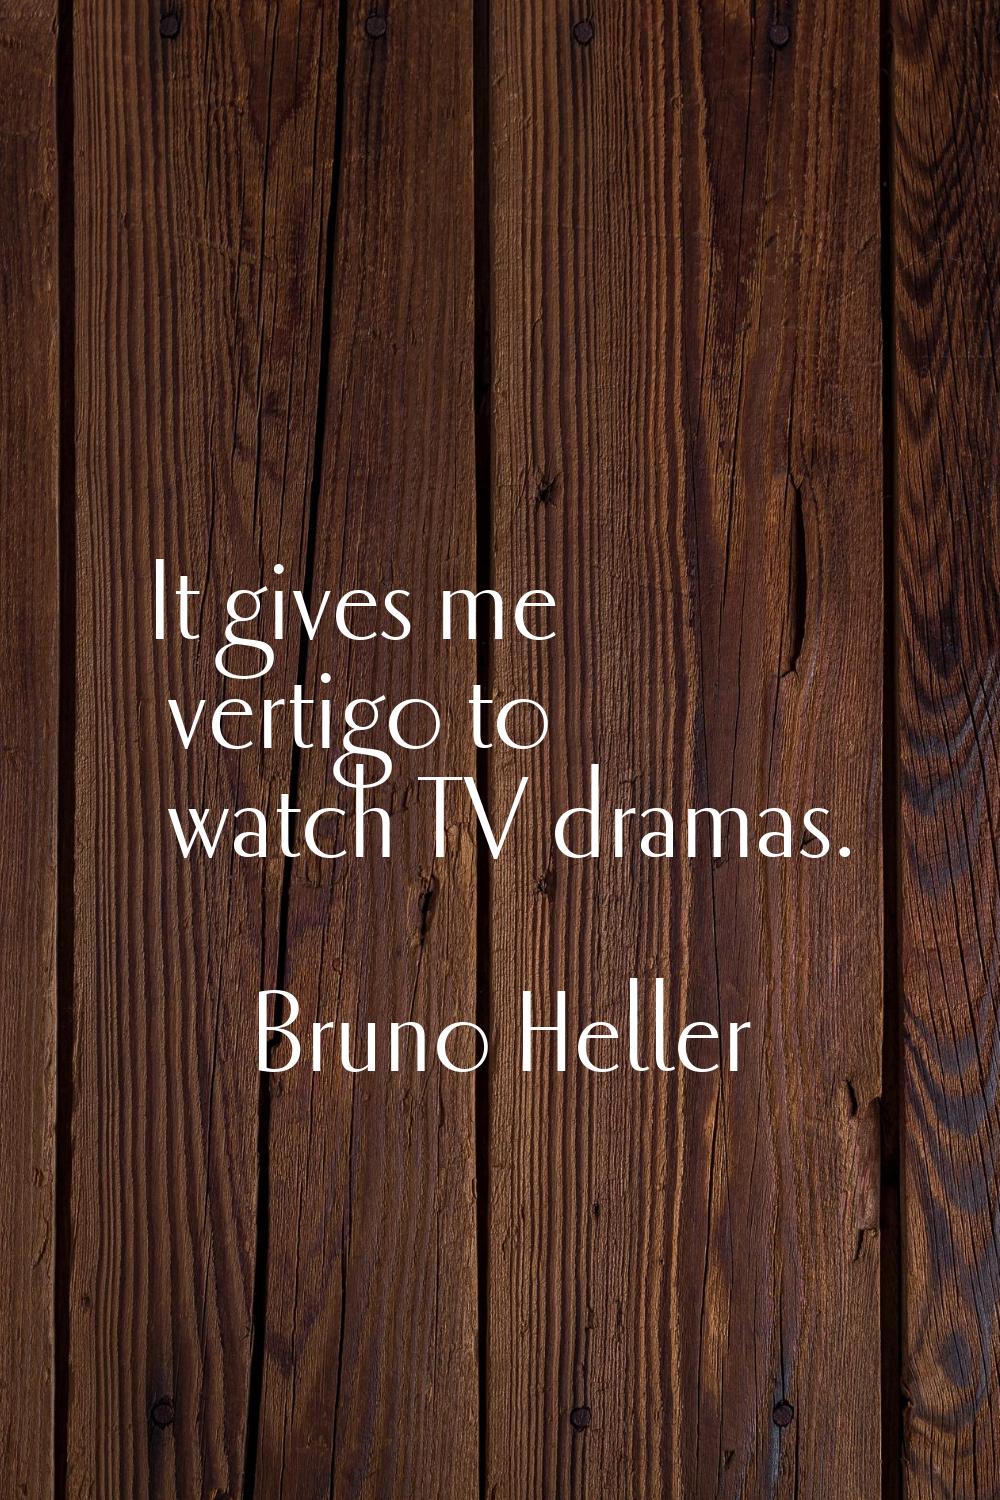 It gives me vertigo to watch TV dramas.